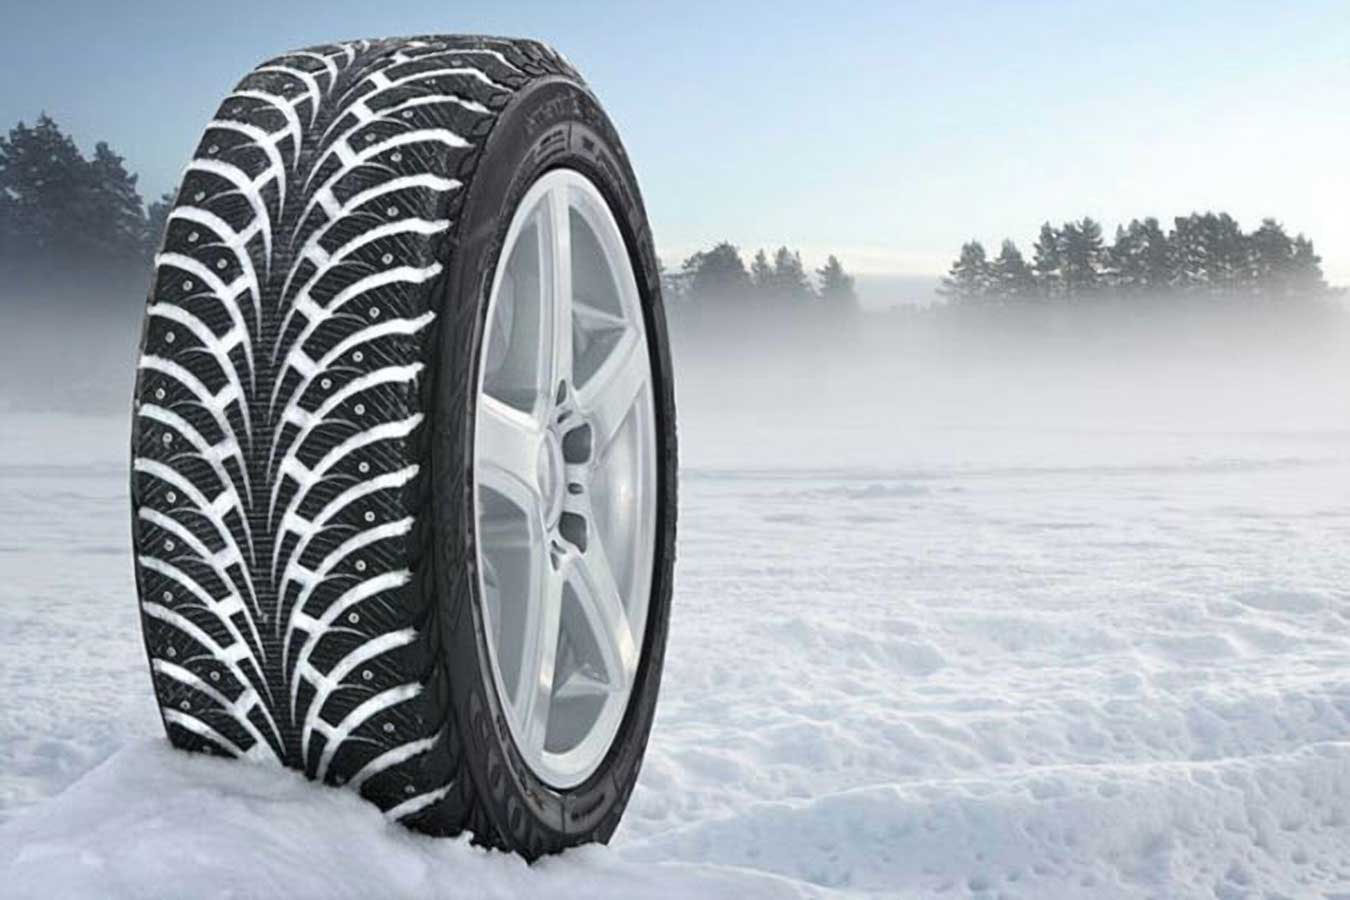 Тест Зимних/Коммерческих зимних шин (Winter/snow Truck) Tire Test от американской организации Consumer Reports